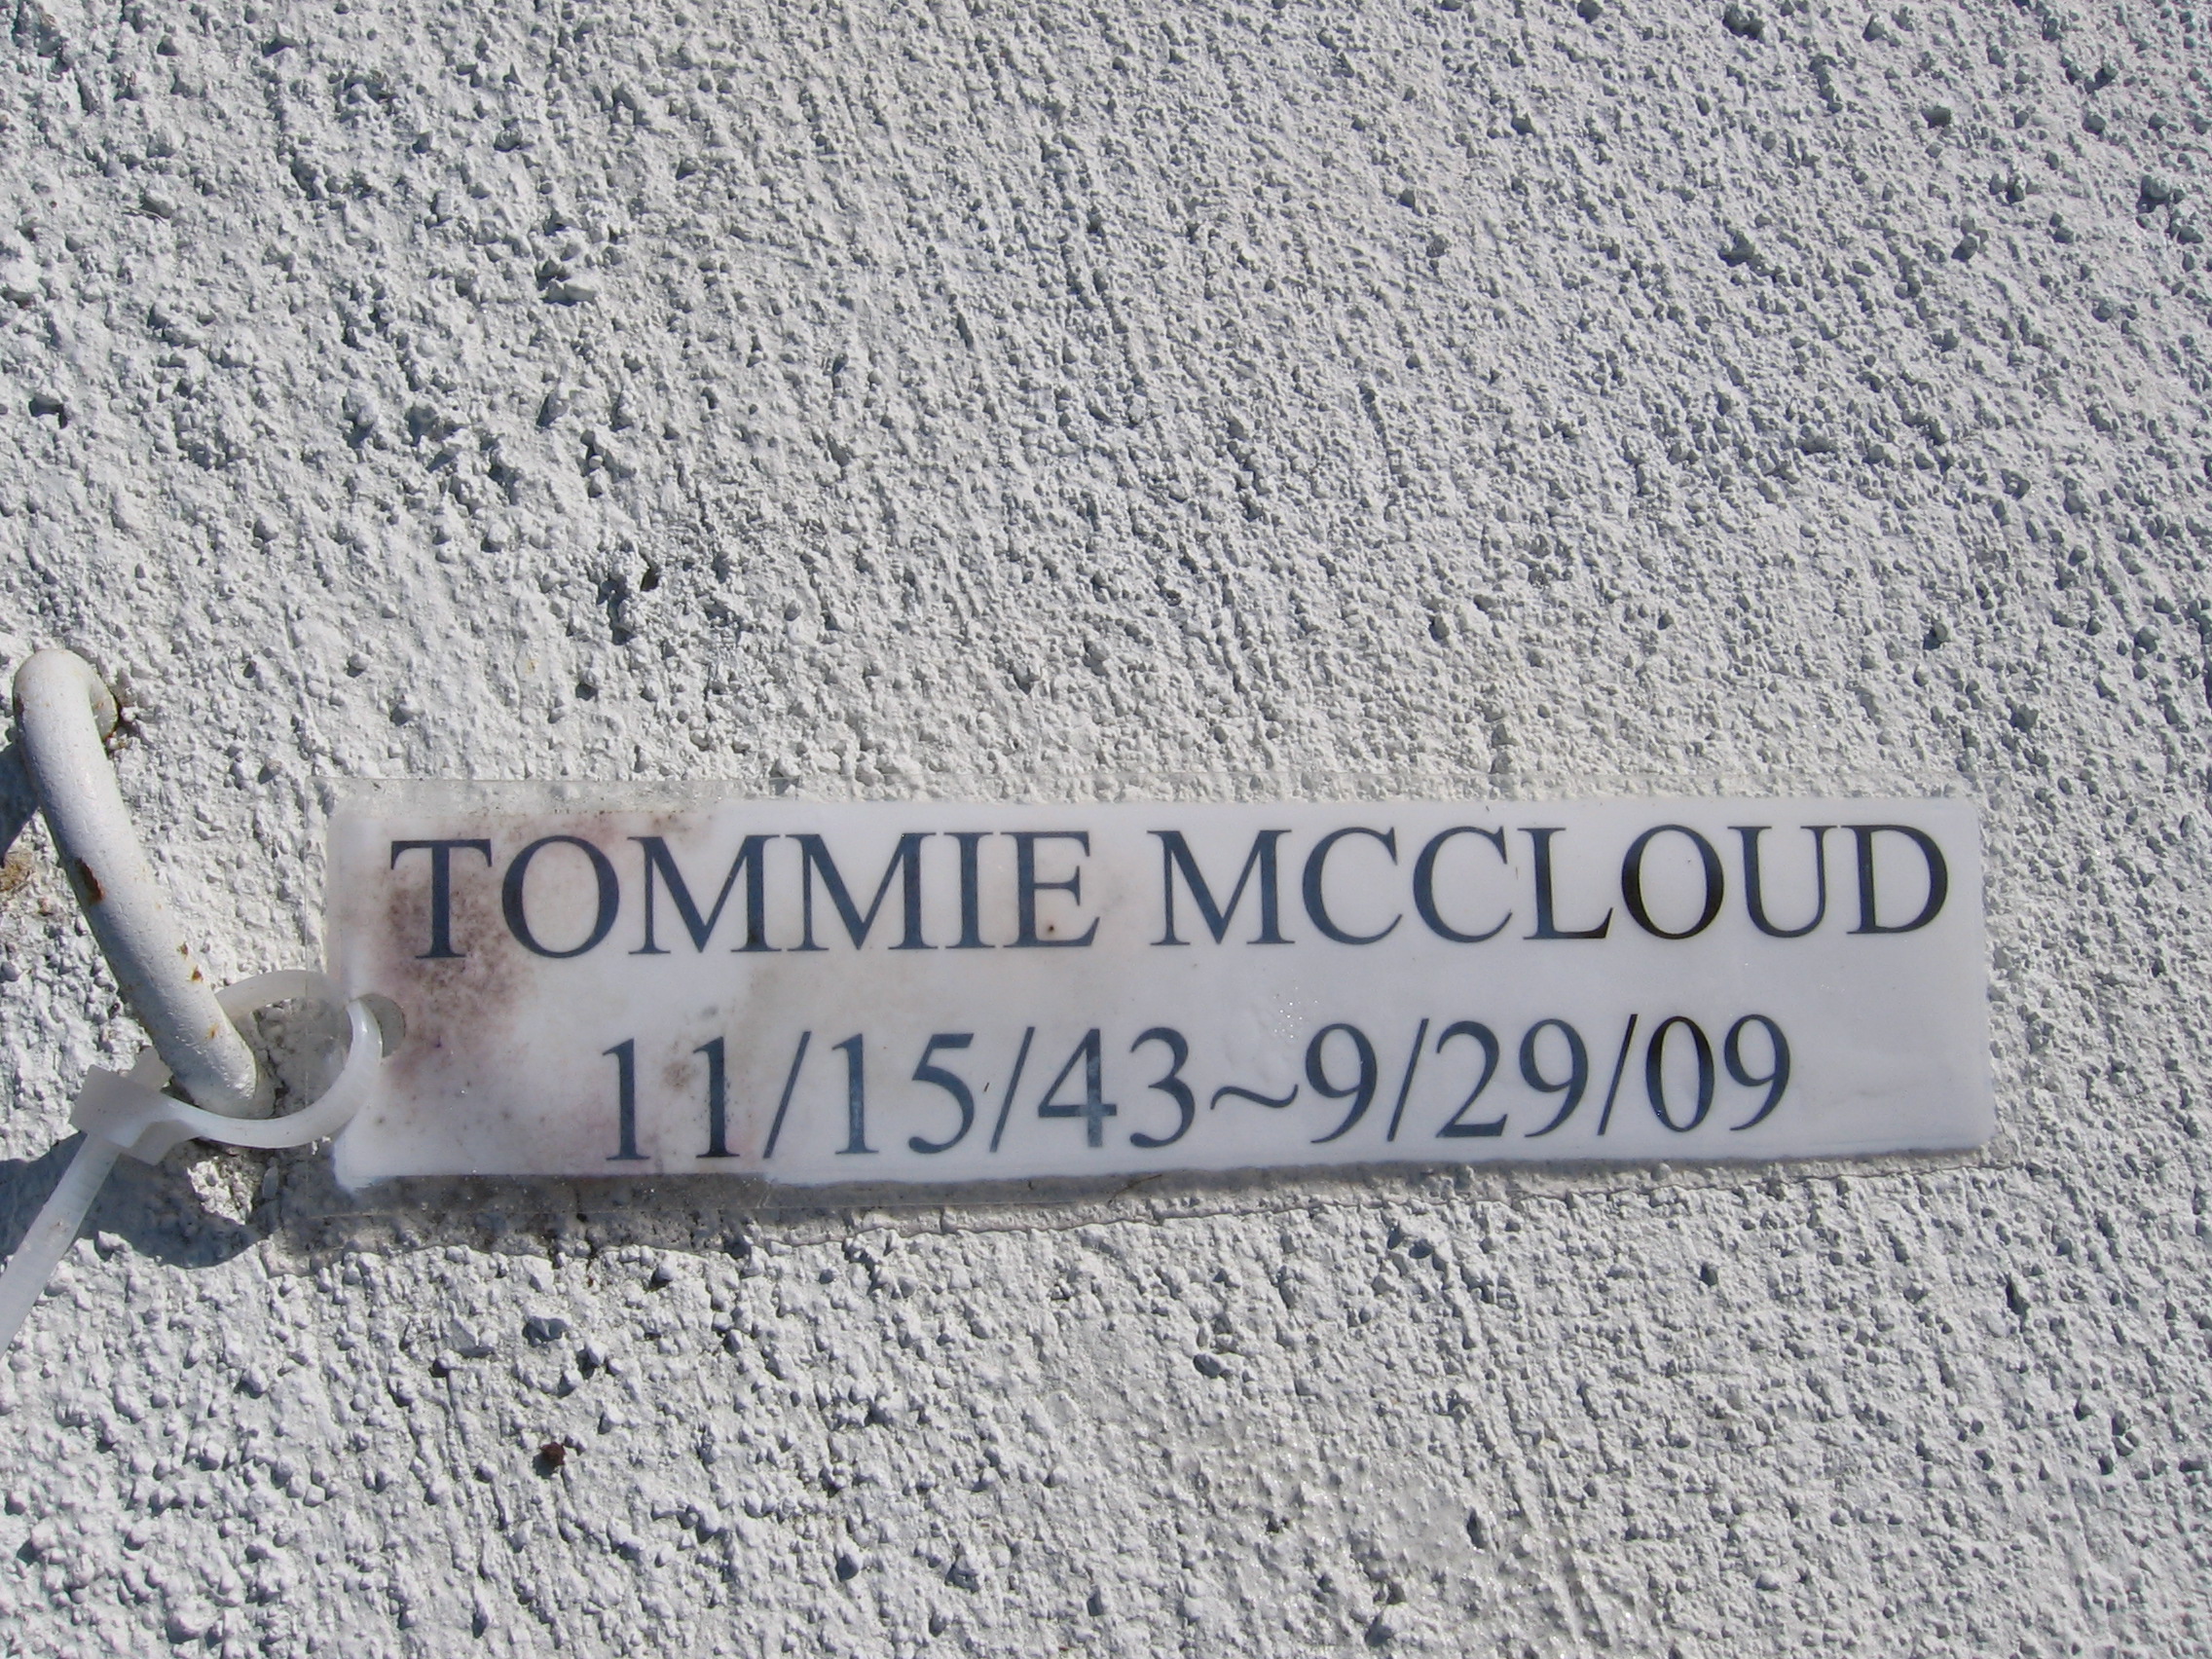 Tommie Mccloud